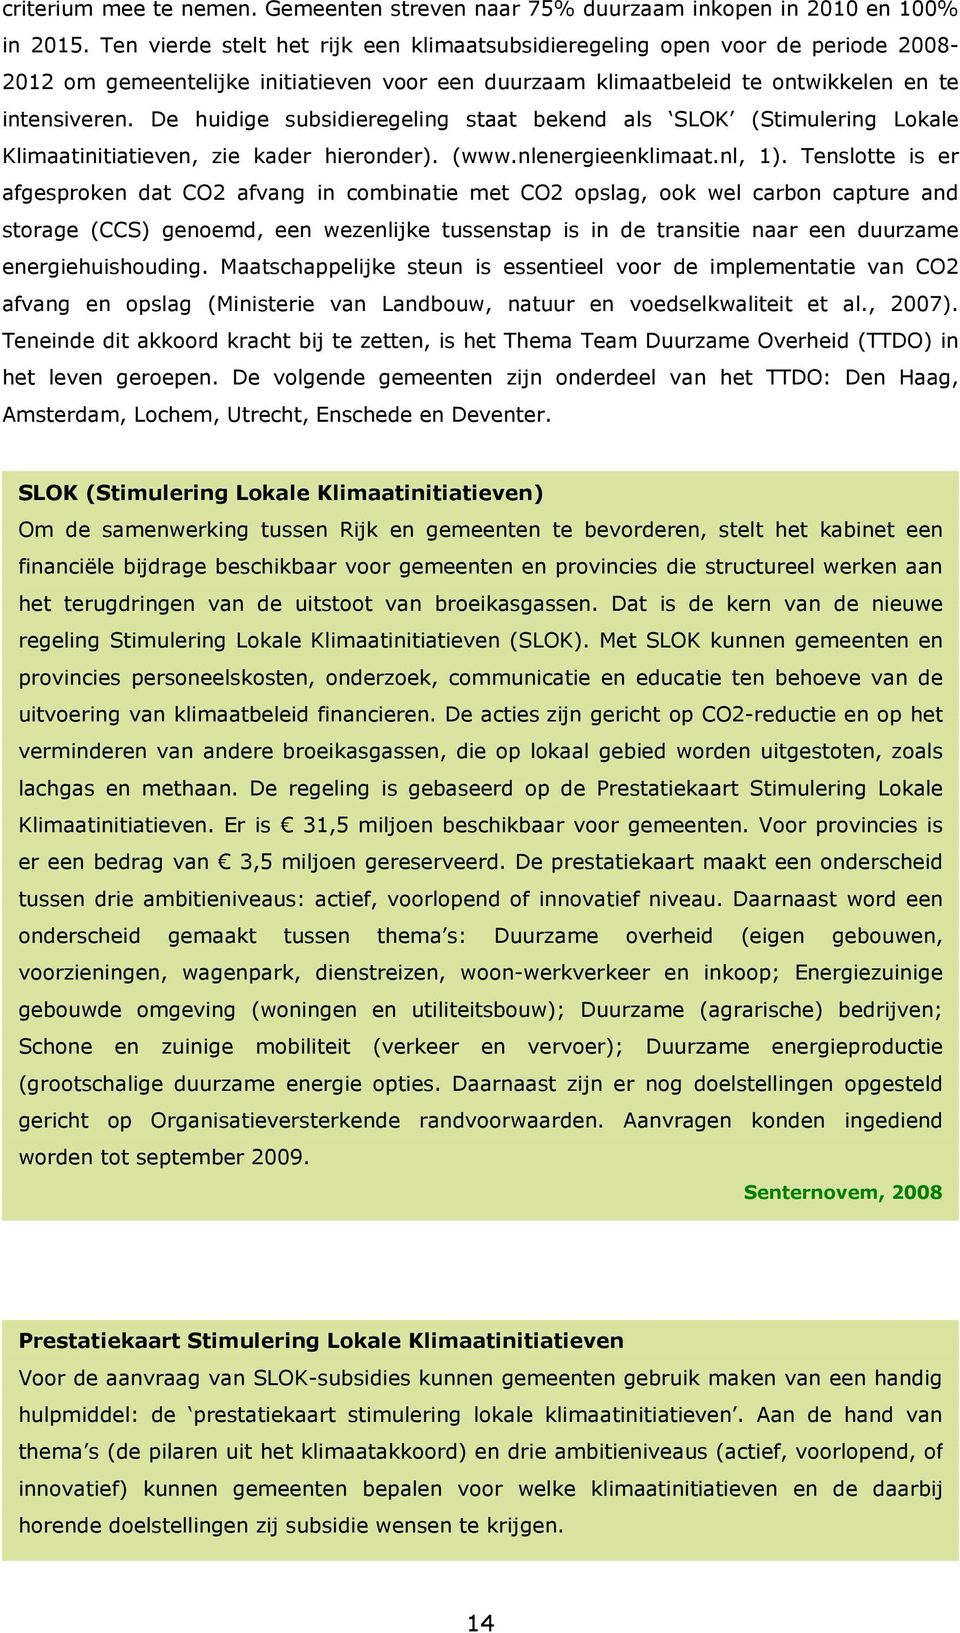 De huidige subsidieregeling staat bekend als SLOK (Stimulering Lokale Klimaatinitiatieven, zie kader hieronder). (www.nlenergieenklimaat.nl, 1).